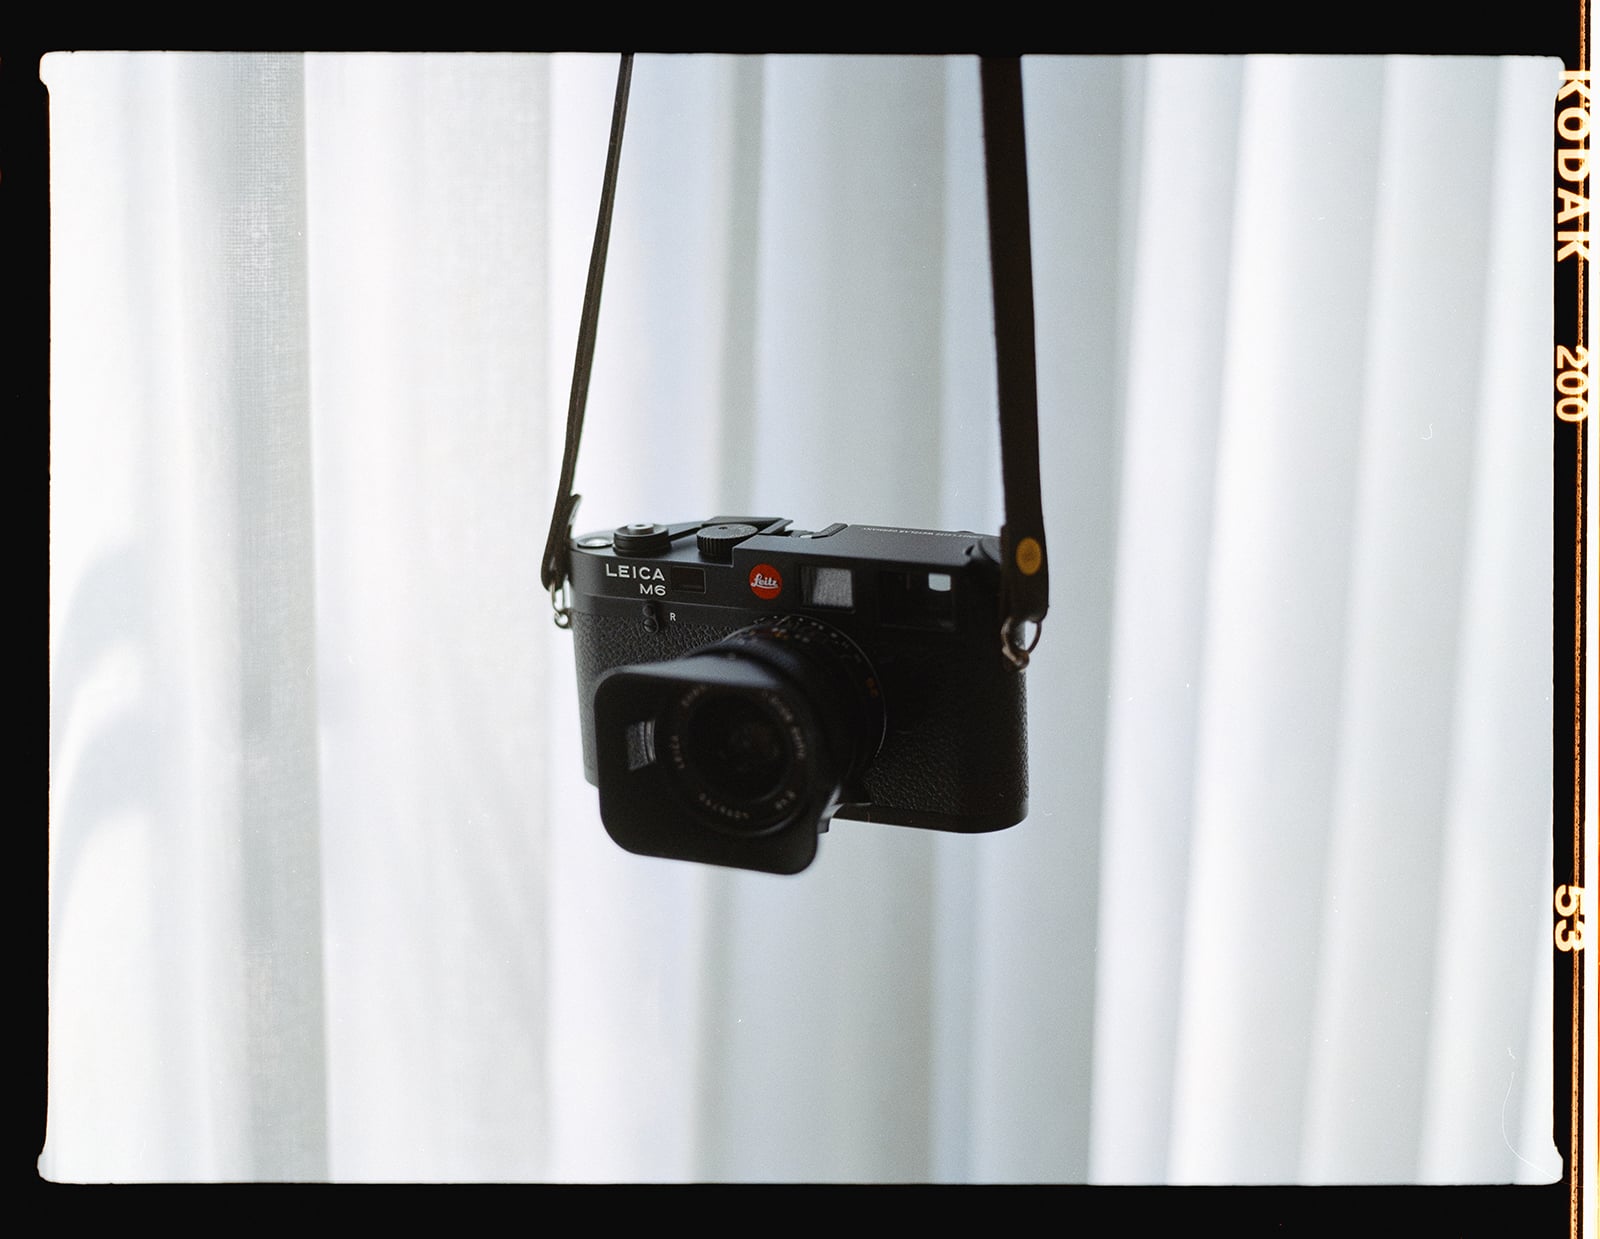 Leica mở bán trở lại máy ảnh film M6 huyền thoại với nâng cấp viewfinder, chất liệu hoàn thiện và giá bán 5.295 USD